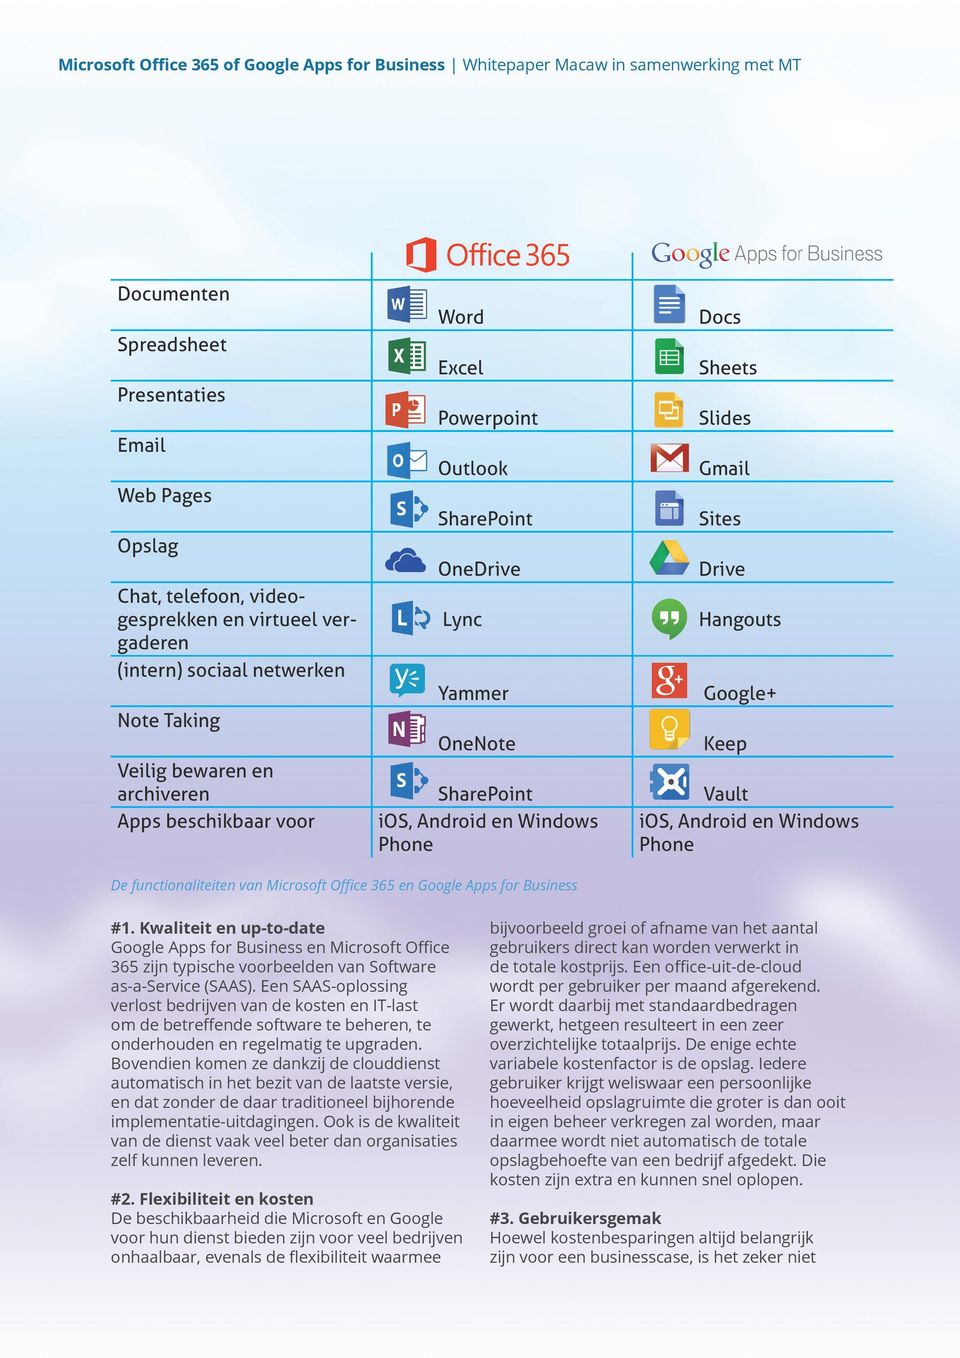 Android en Windows Phone De functionaliteiten van Microsoft Office 365 en Google Apps for Business #1.